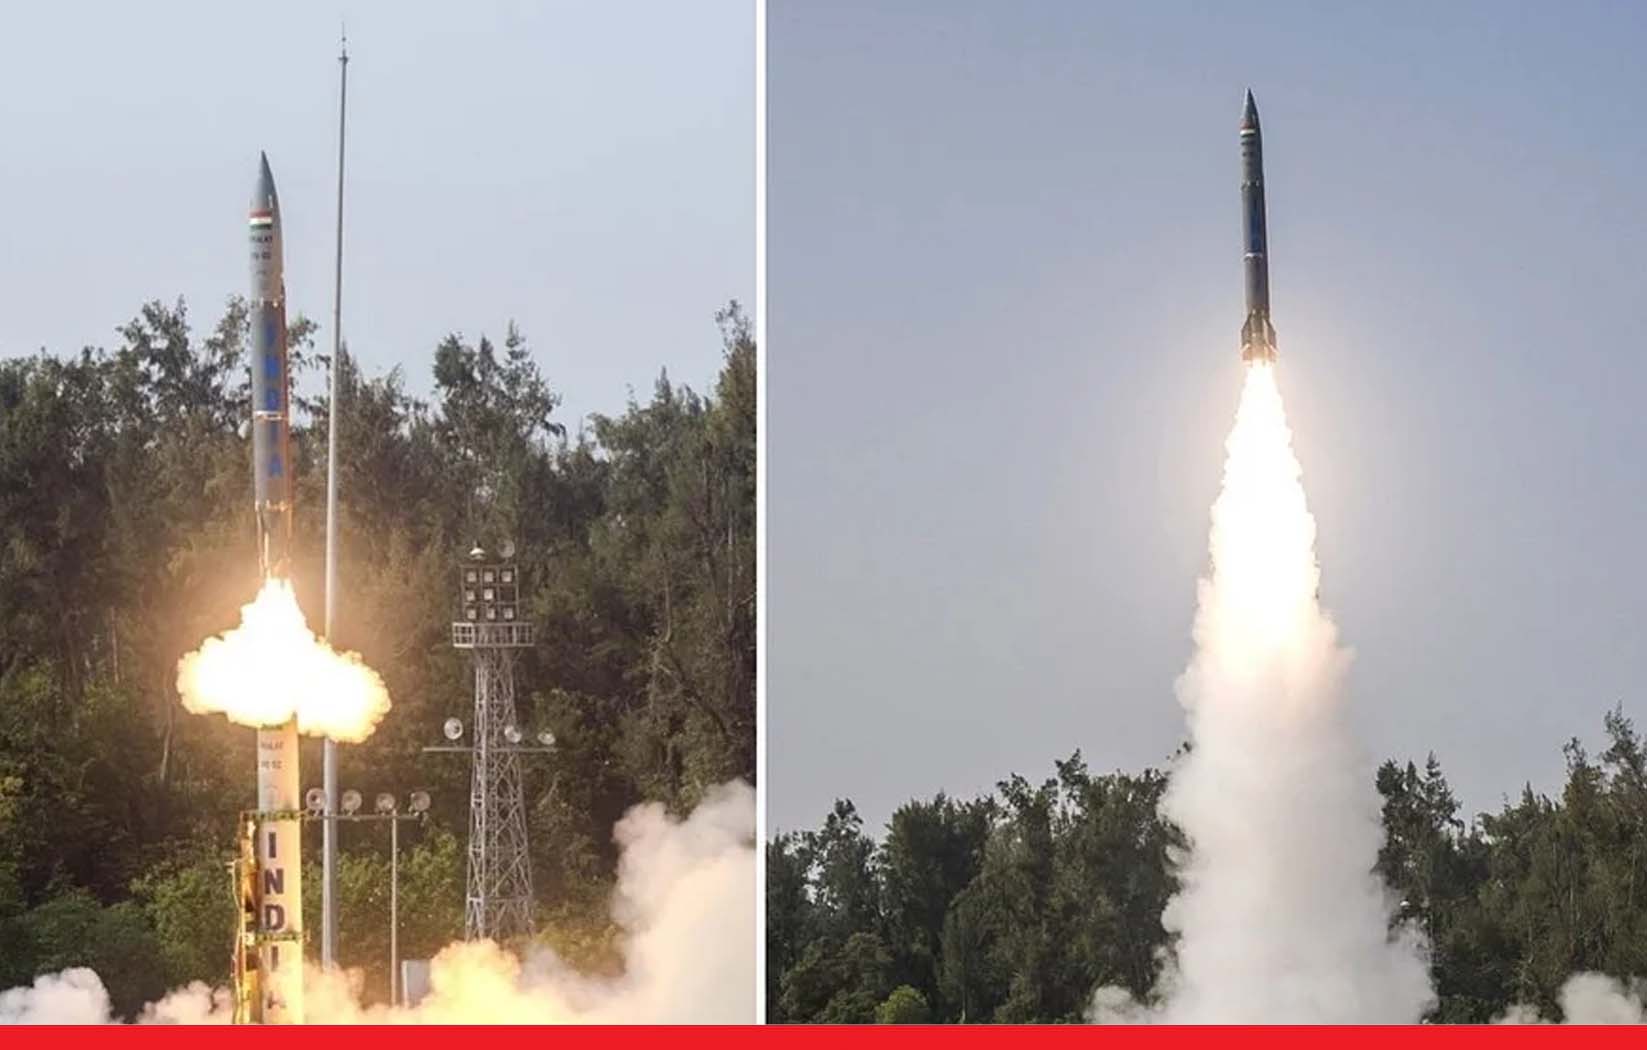 भारत ने प्रलय मिसाइल का किया सफलतापूर्वक परीक्षण, 24 घंटे में दूसरा टेस्ट